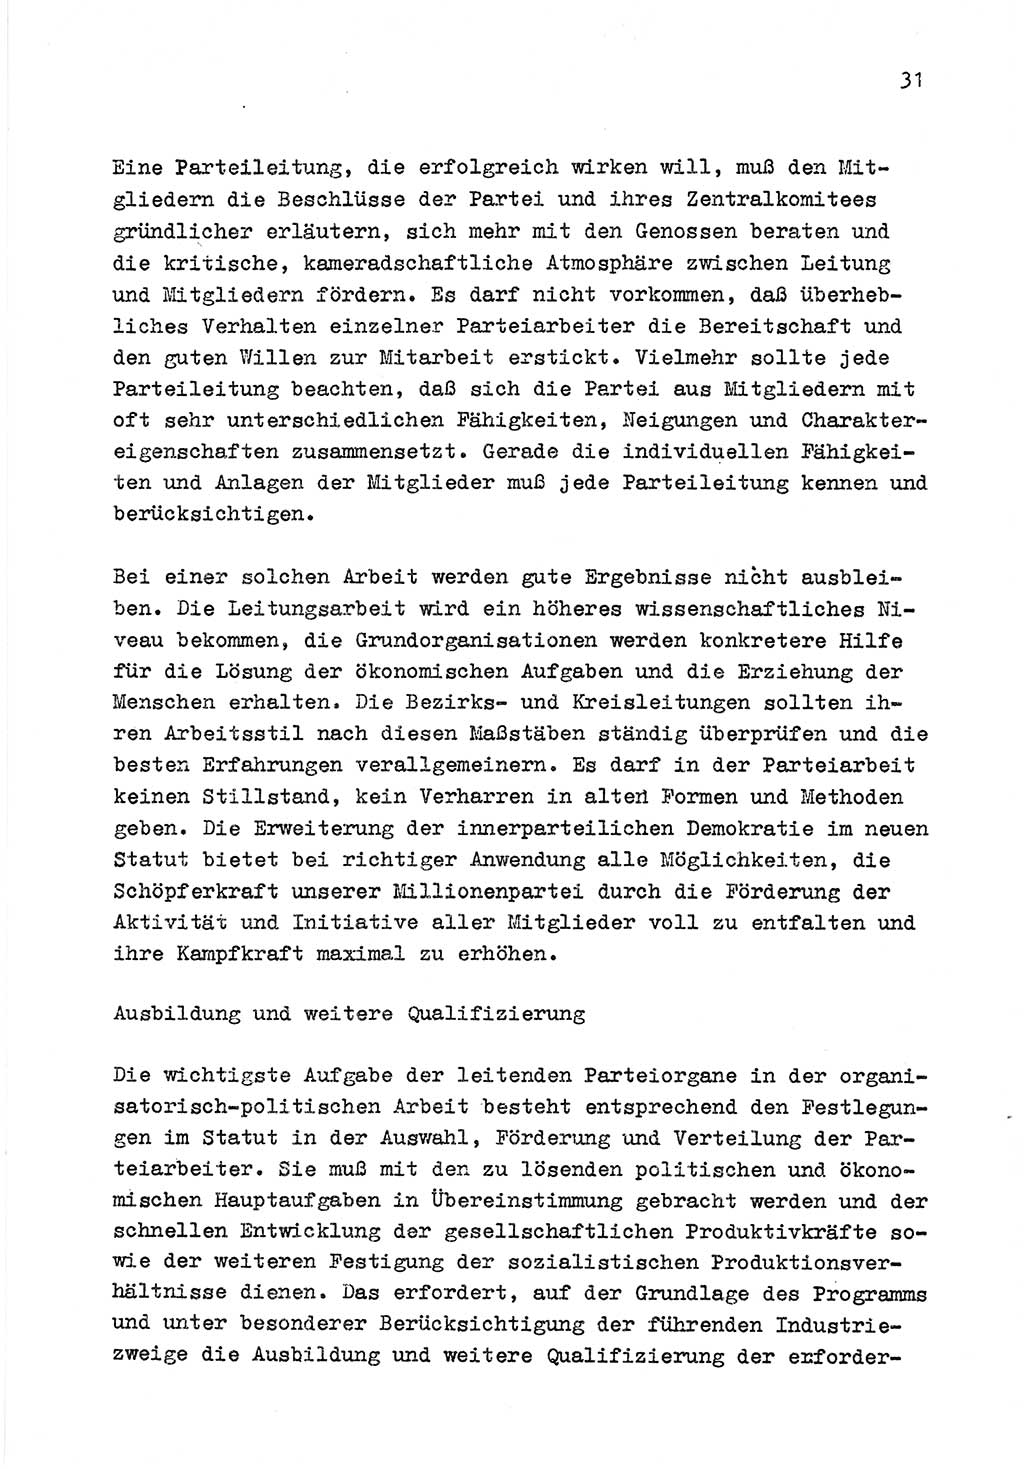 Zu Fragen der Parteiarbeit [Sozialistische Einheitspartei Deutschlands (SED) Deutsche Demokratische Republik (DDR)] 1979, Seite 31 (Fr. PA SED DDR 1979, S. 31)